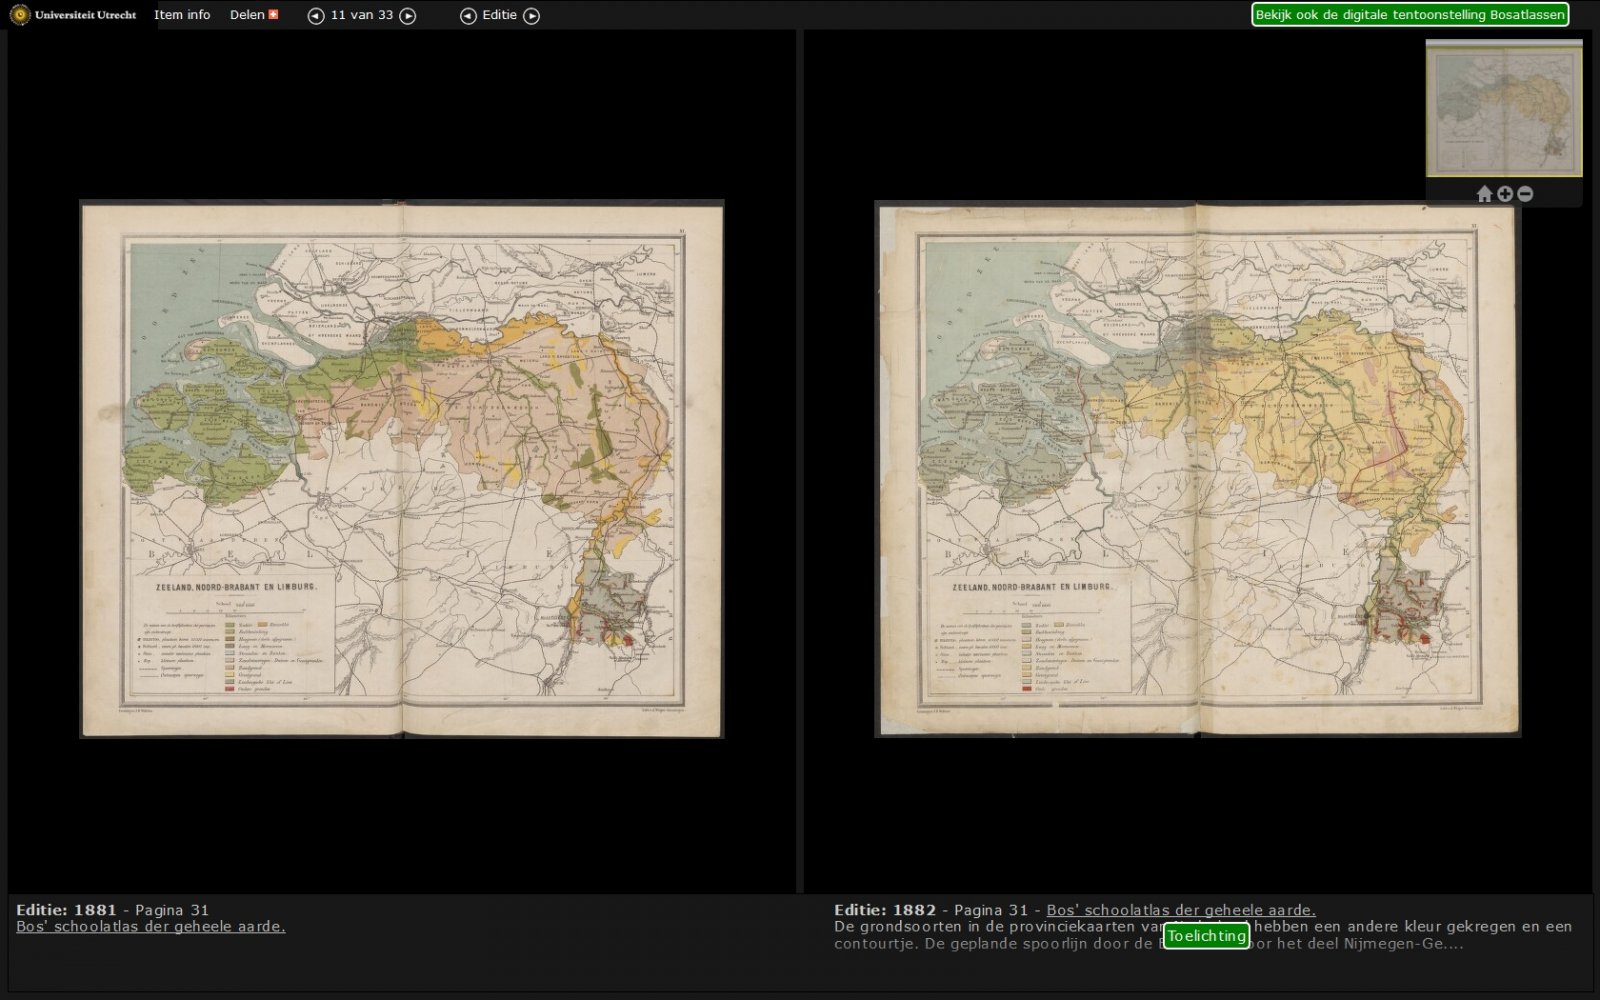 Vergelijkingsviewer met kaart van Zuid-Nederland uit twee opeenvolgende edities van de Bosatlas